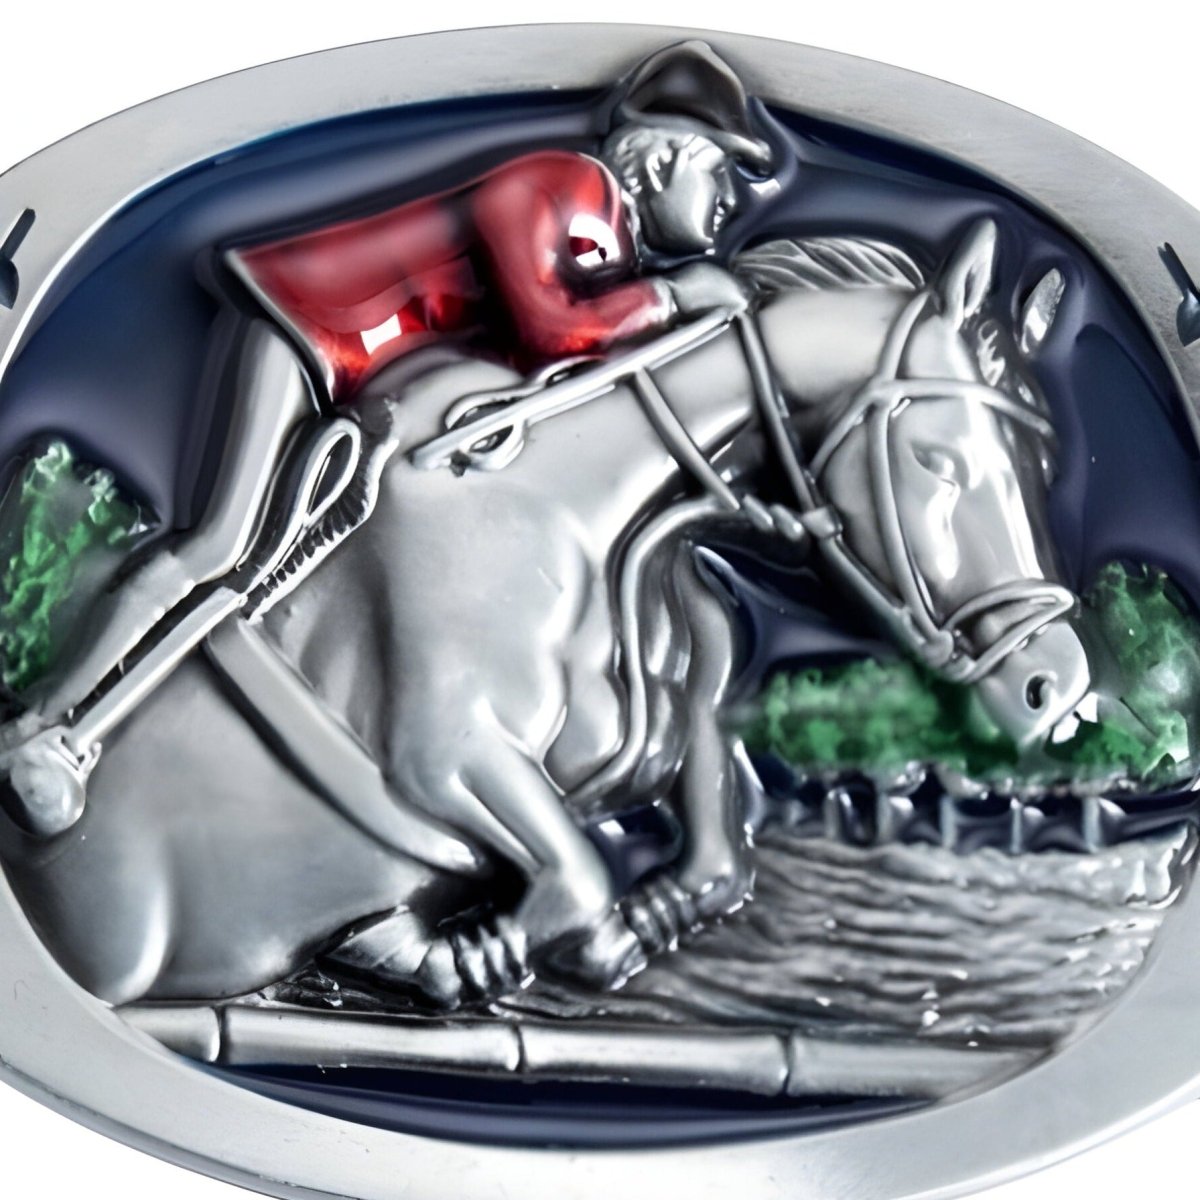 Boucle de ceinture Animal, équitation, modèle Lyle - La Boutique de la Ceinture